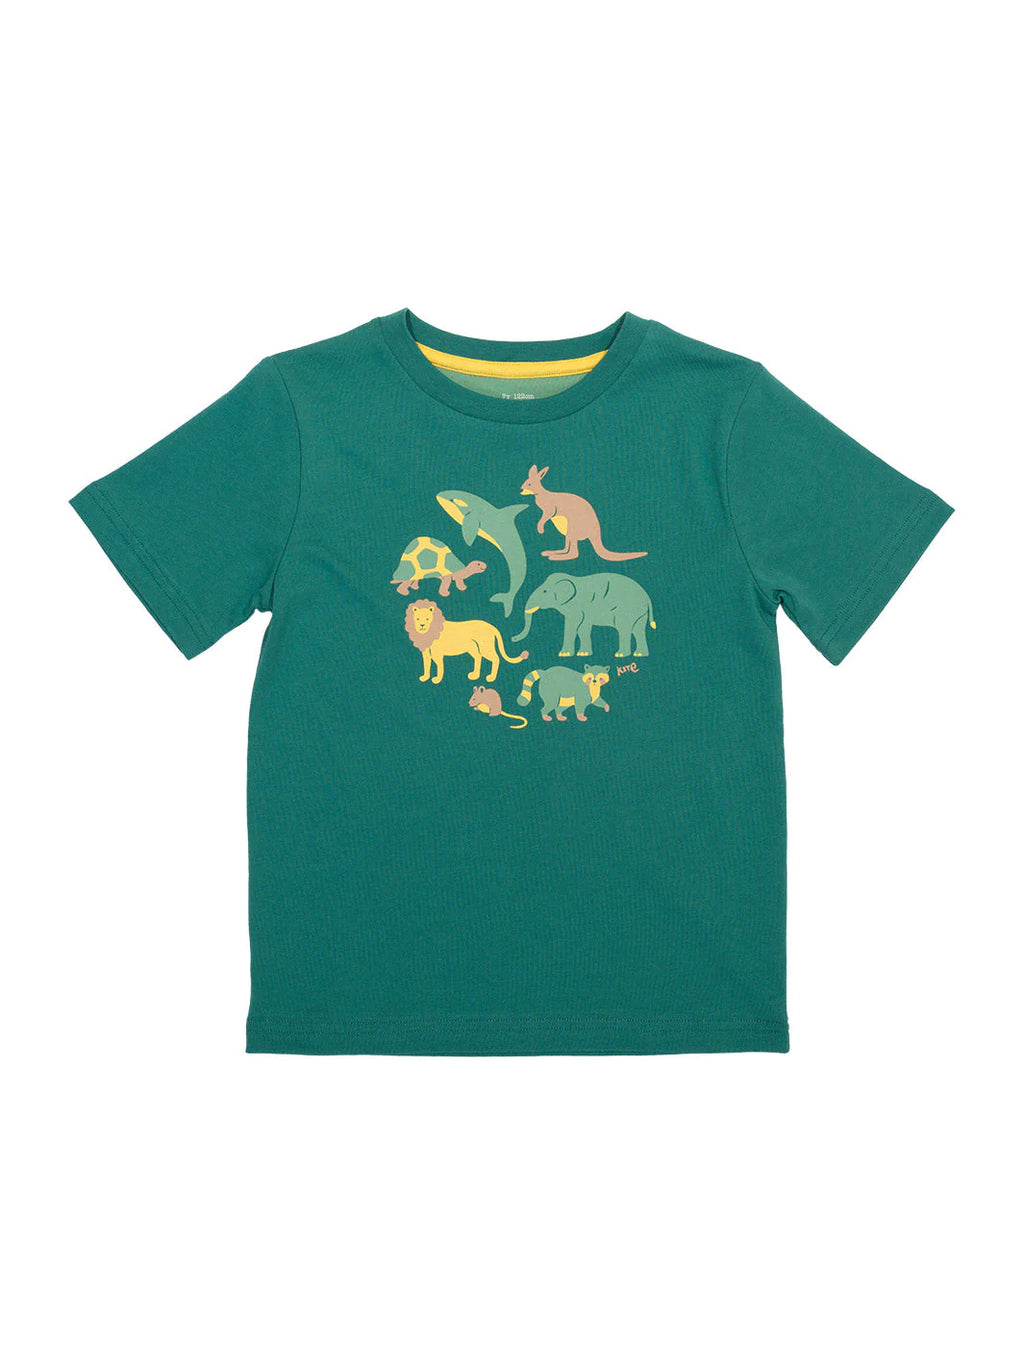 Kite Clothing Boys Animal Planet Green T-shirt | New Season